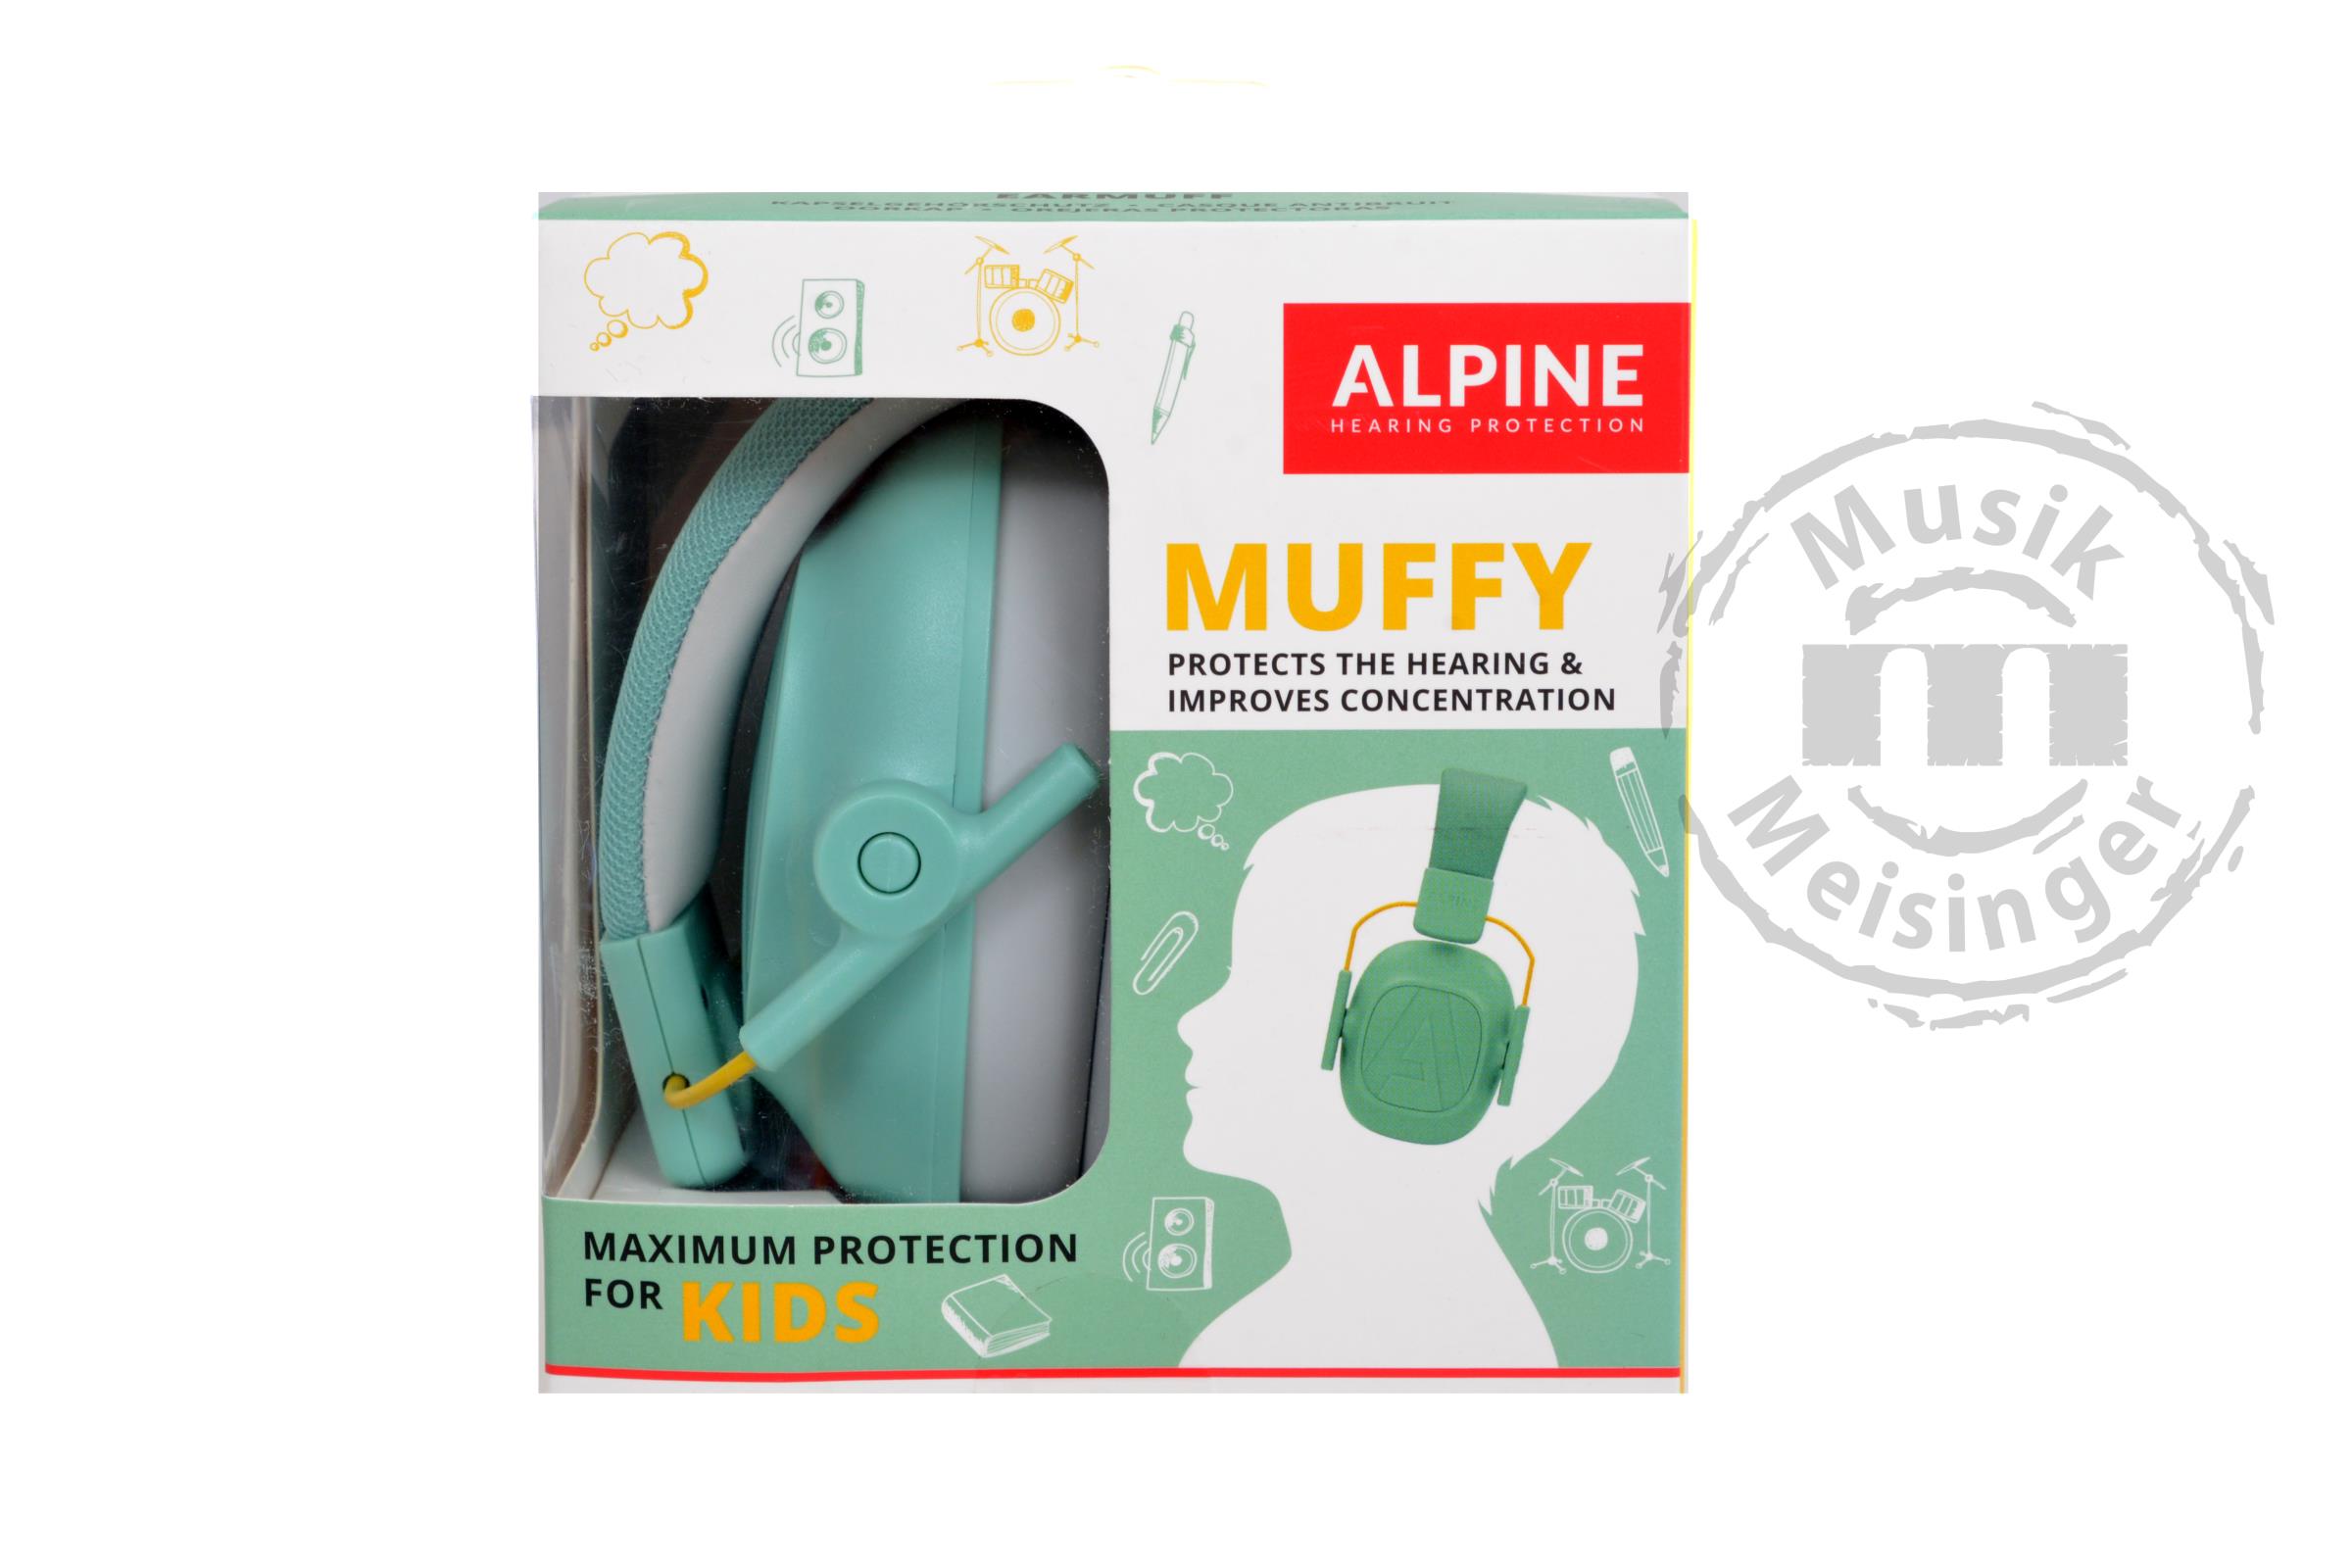 Alpine Muffy Mint Gehörschutz